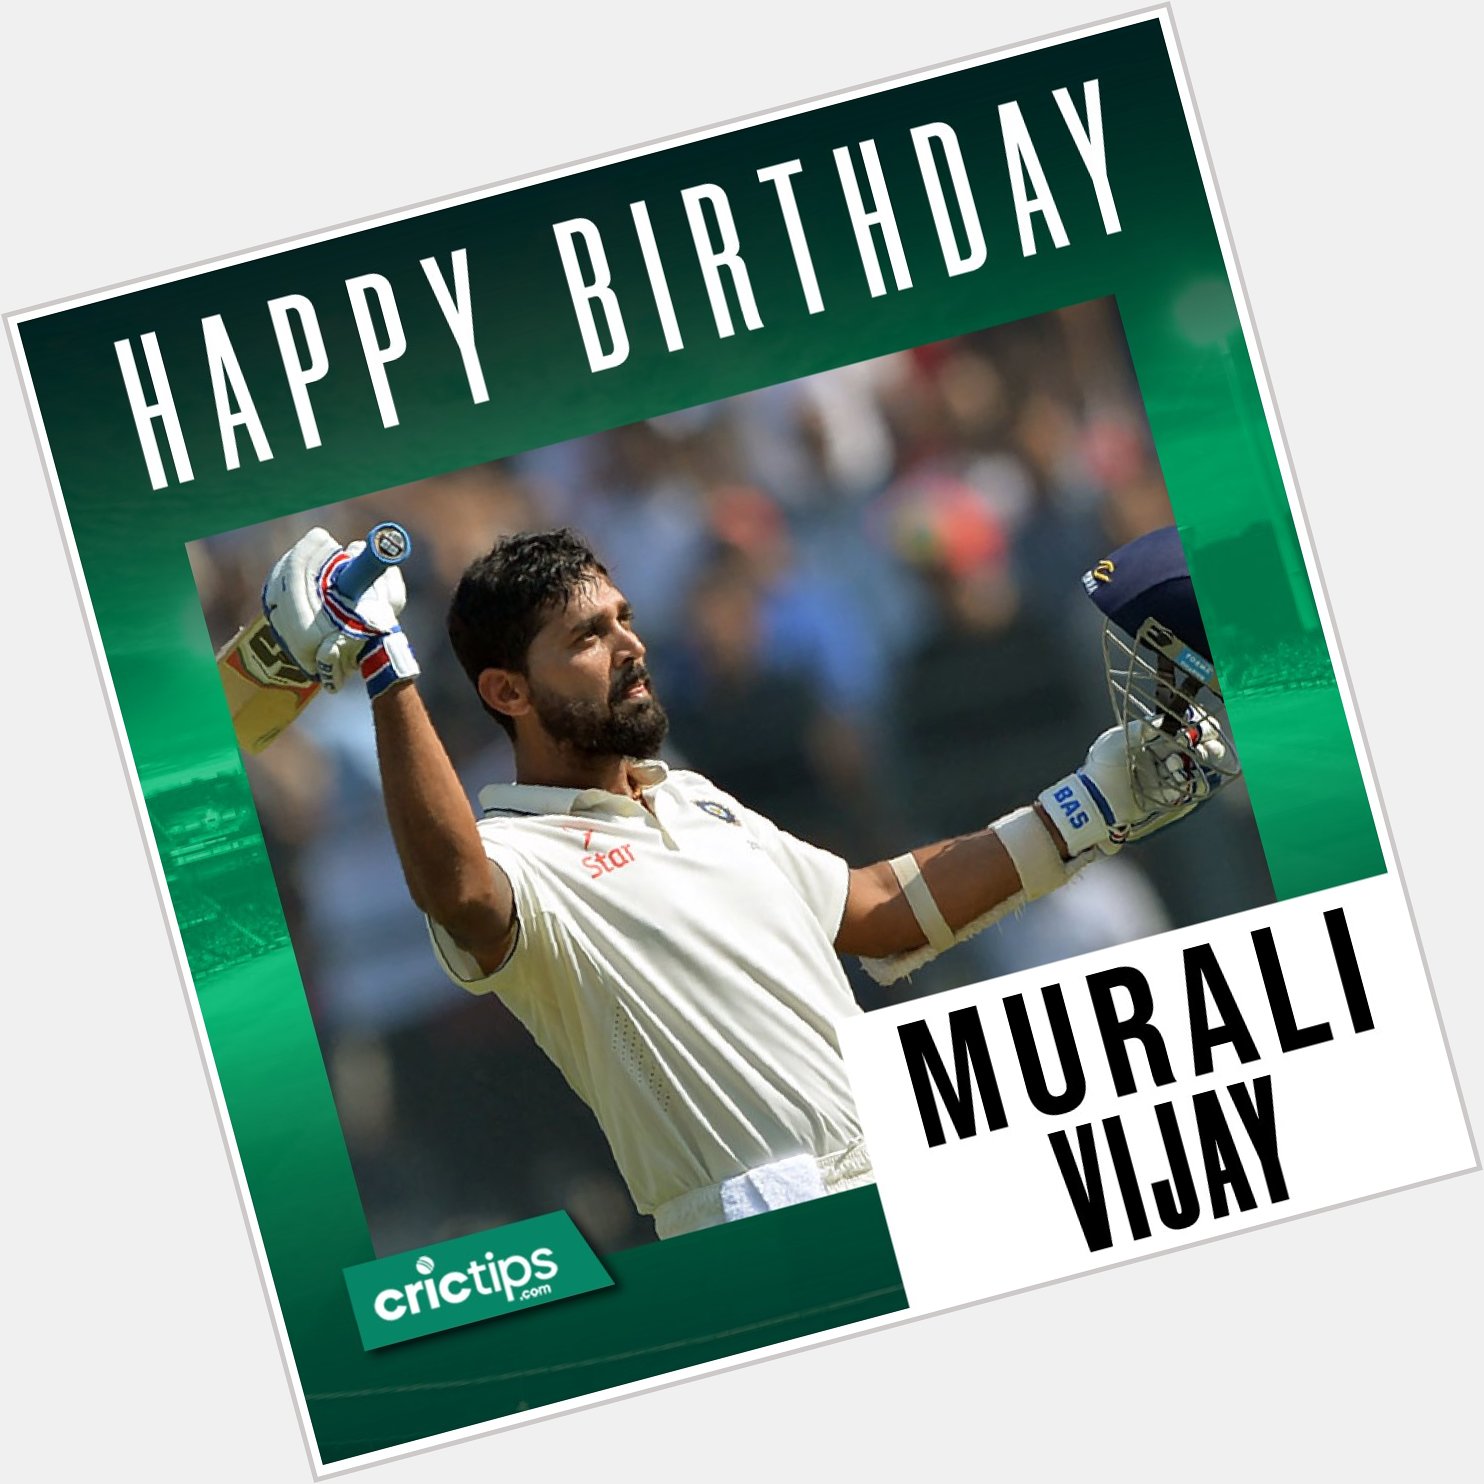 Let\s wish India\s star cricketer Murali Vijay a very Happy Birthday.    